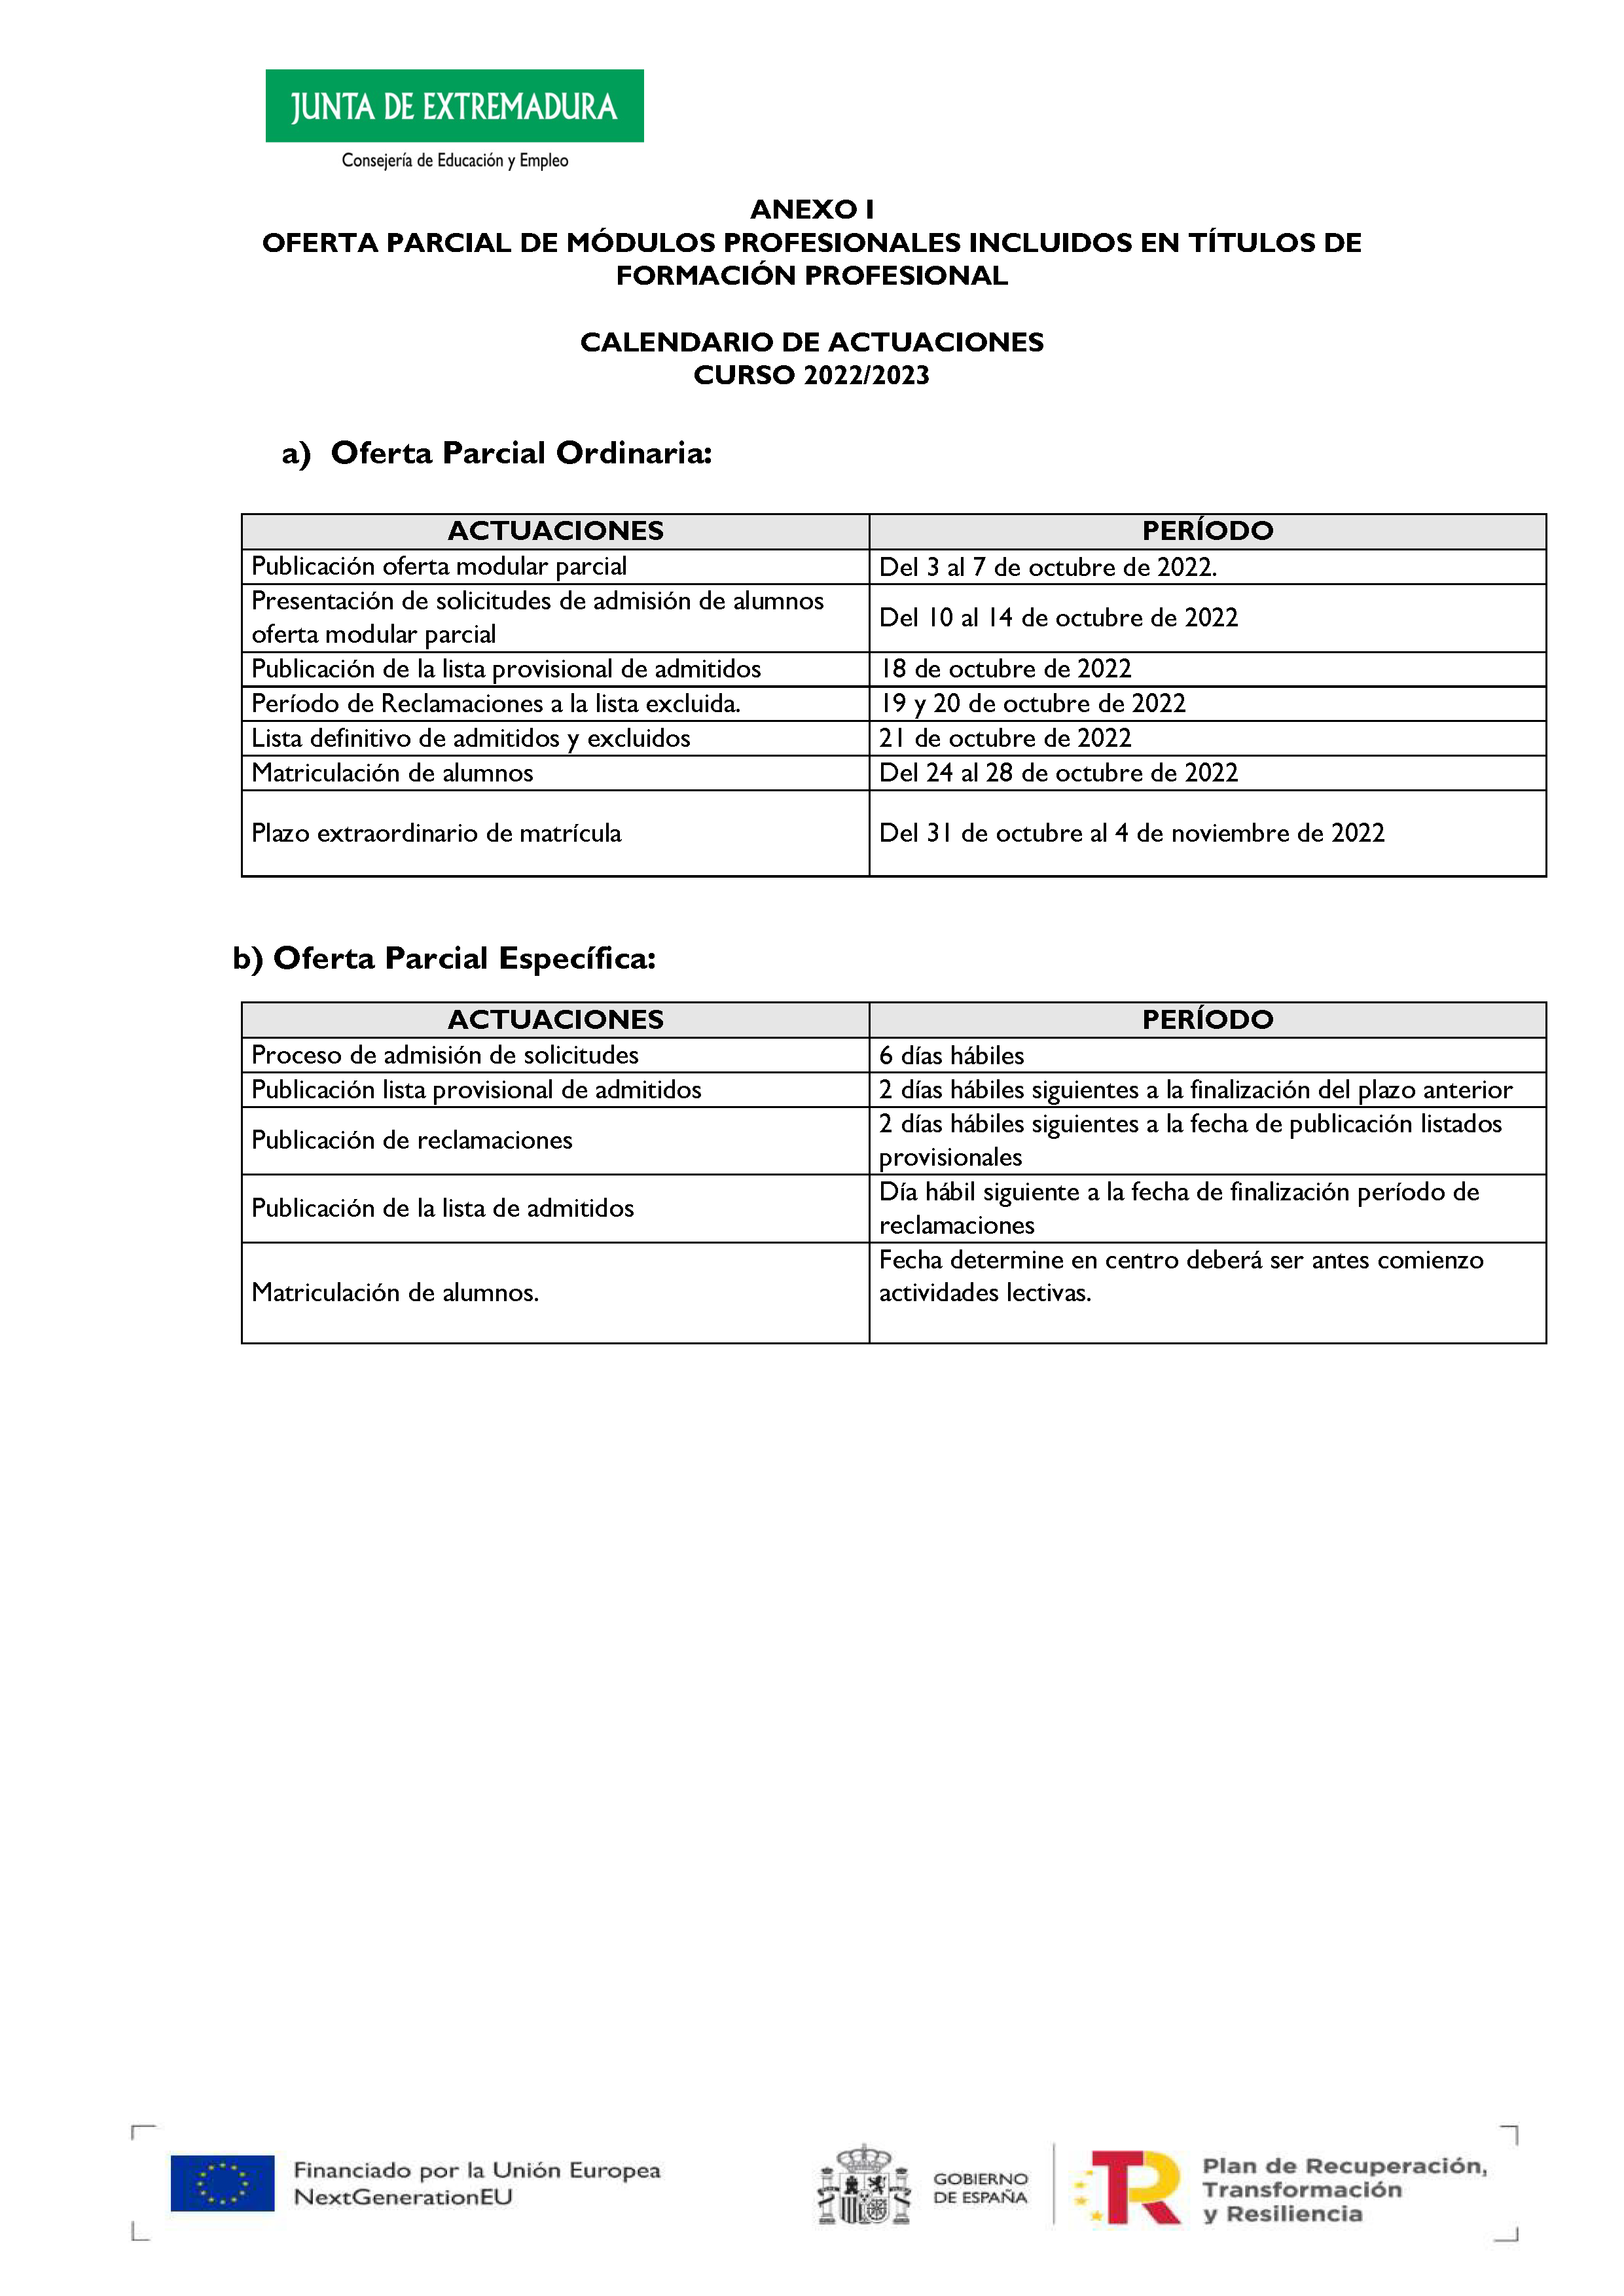 ANEXO I OFERTA PARCIAL DE MÓDULOS PROFESIONALES INCLUIDOS EN TÍTULOS DE FORMACIÓN PROFESIONAL CALENDARIO DE ACTUACIONES - CURSO 2022/2023 Pag 1